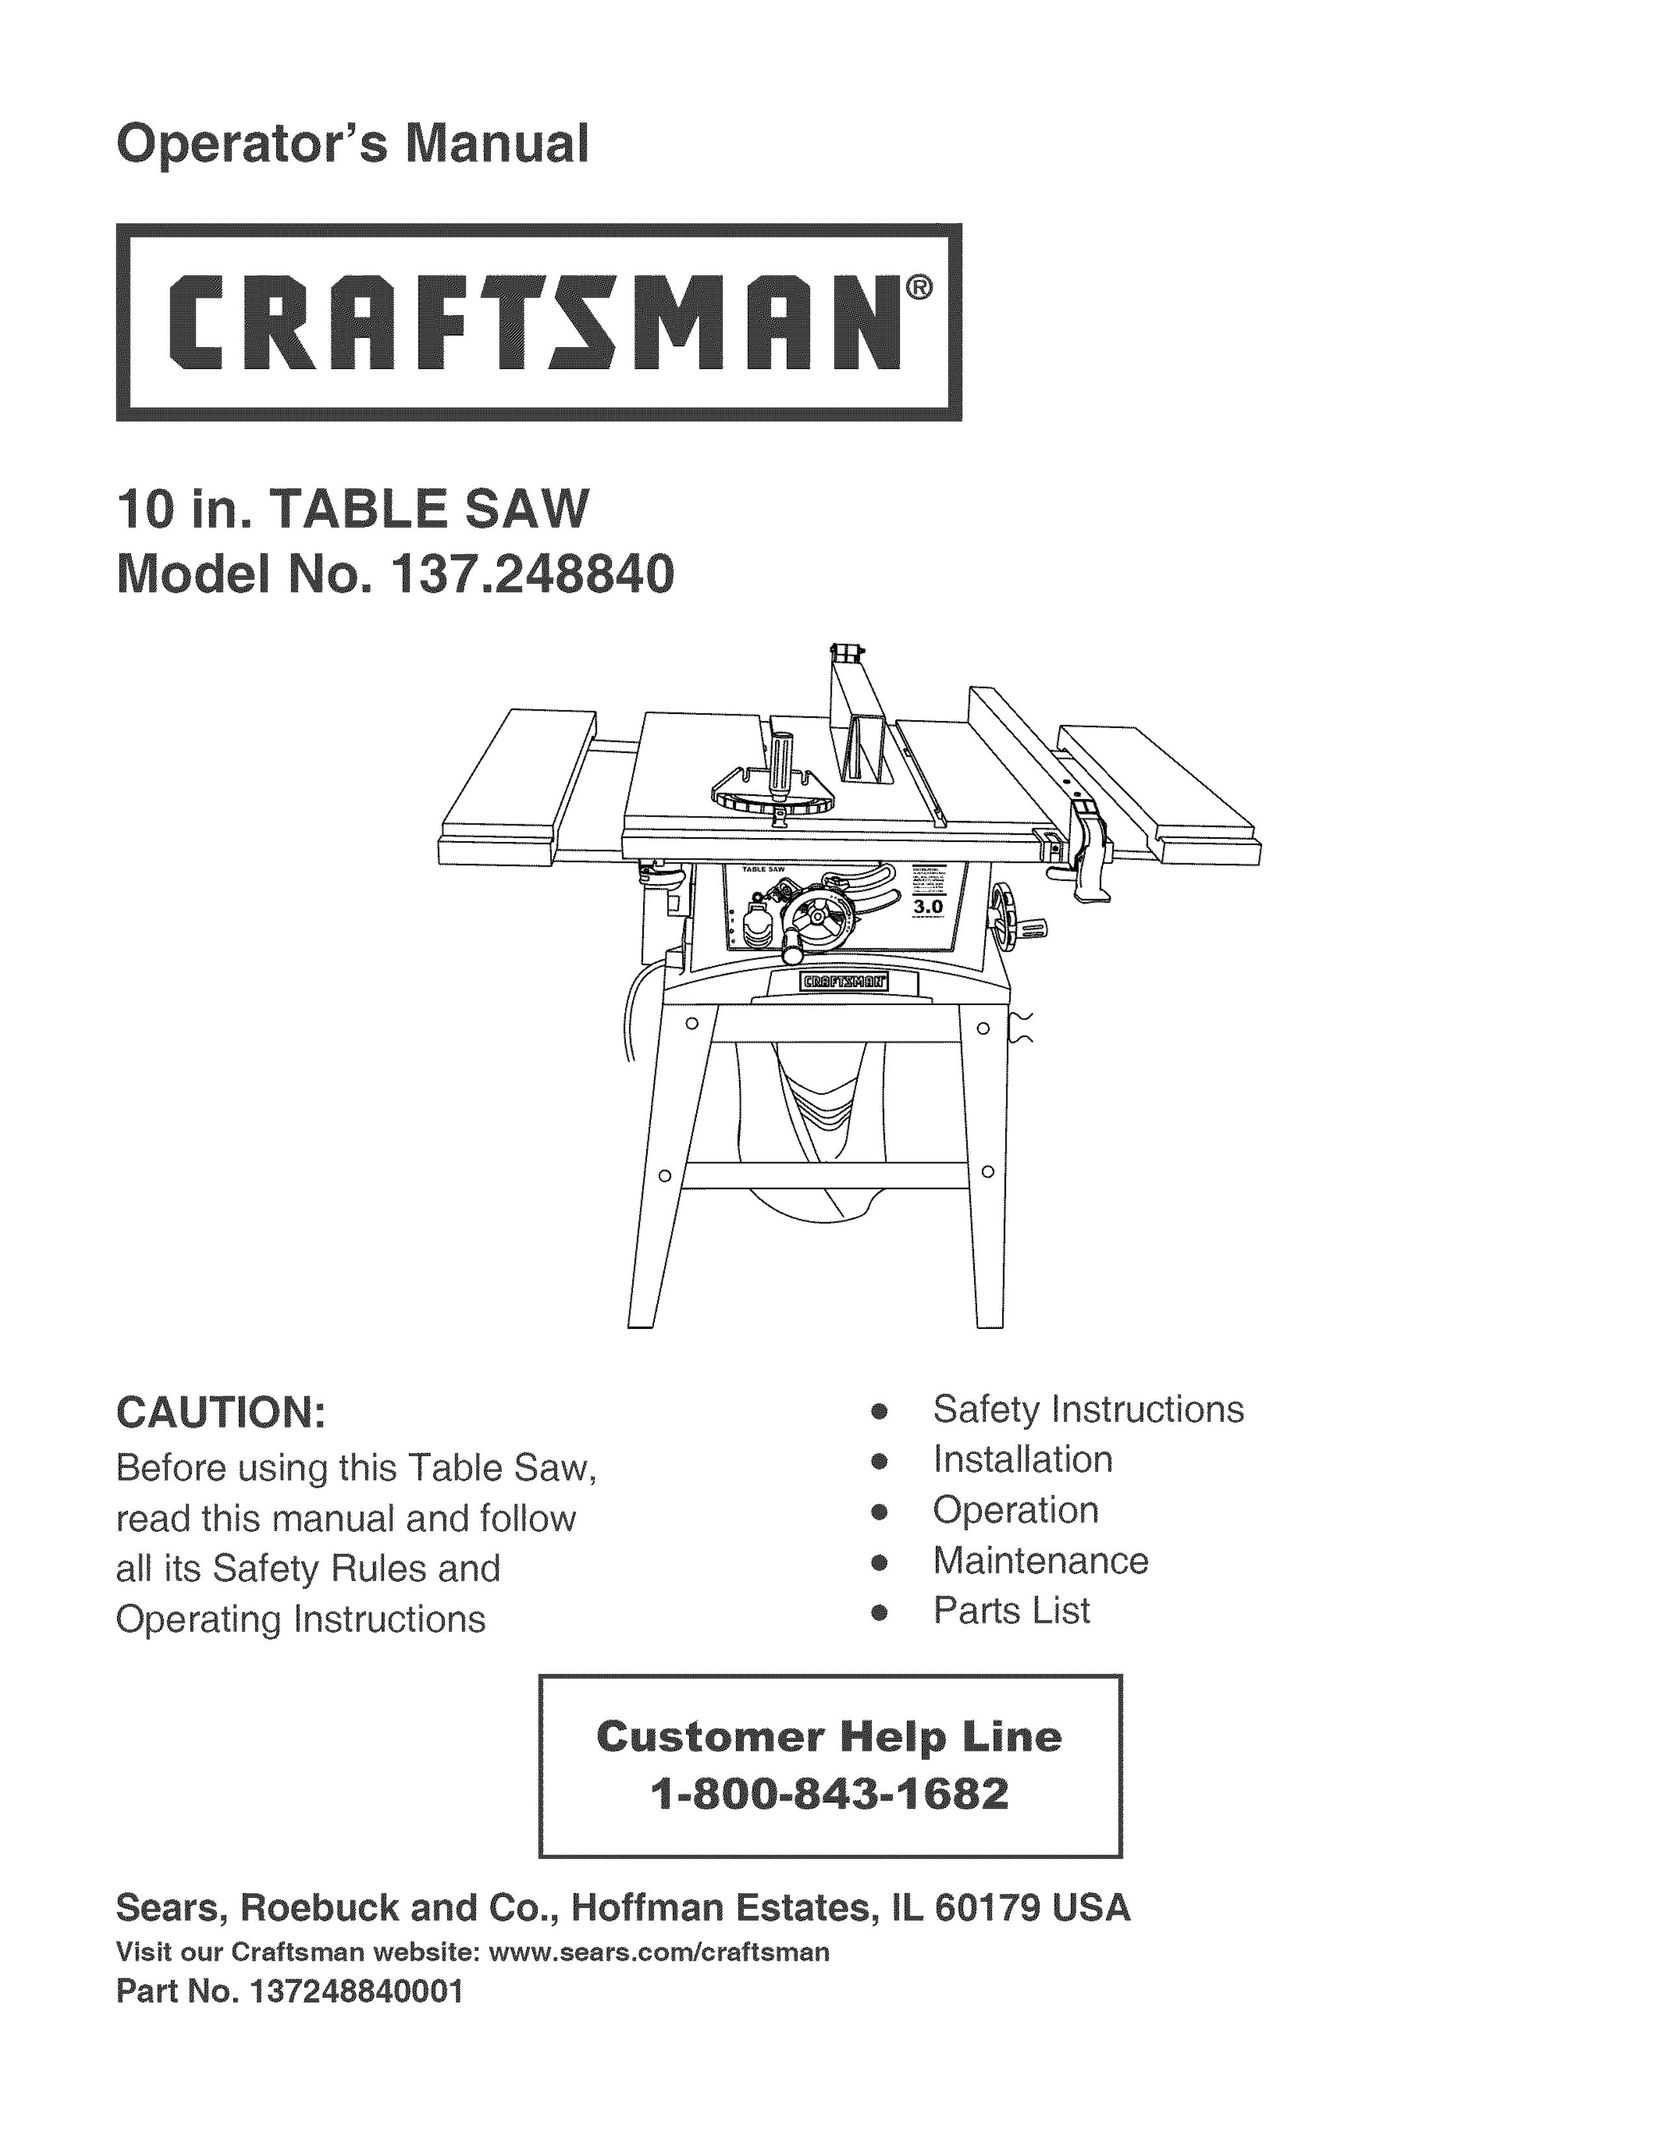 Craftsman 137.24884 Saw User Manual